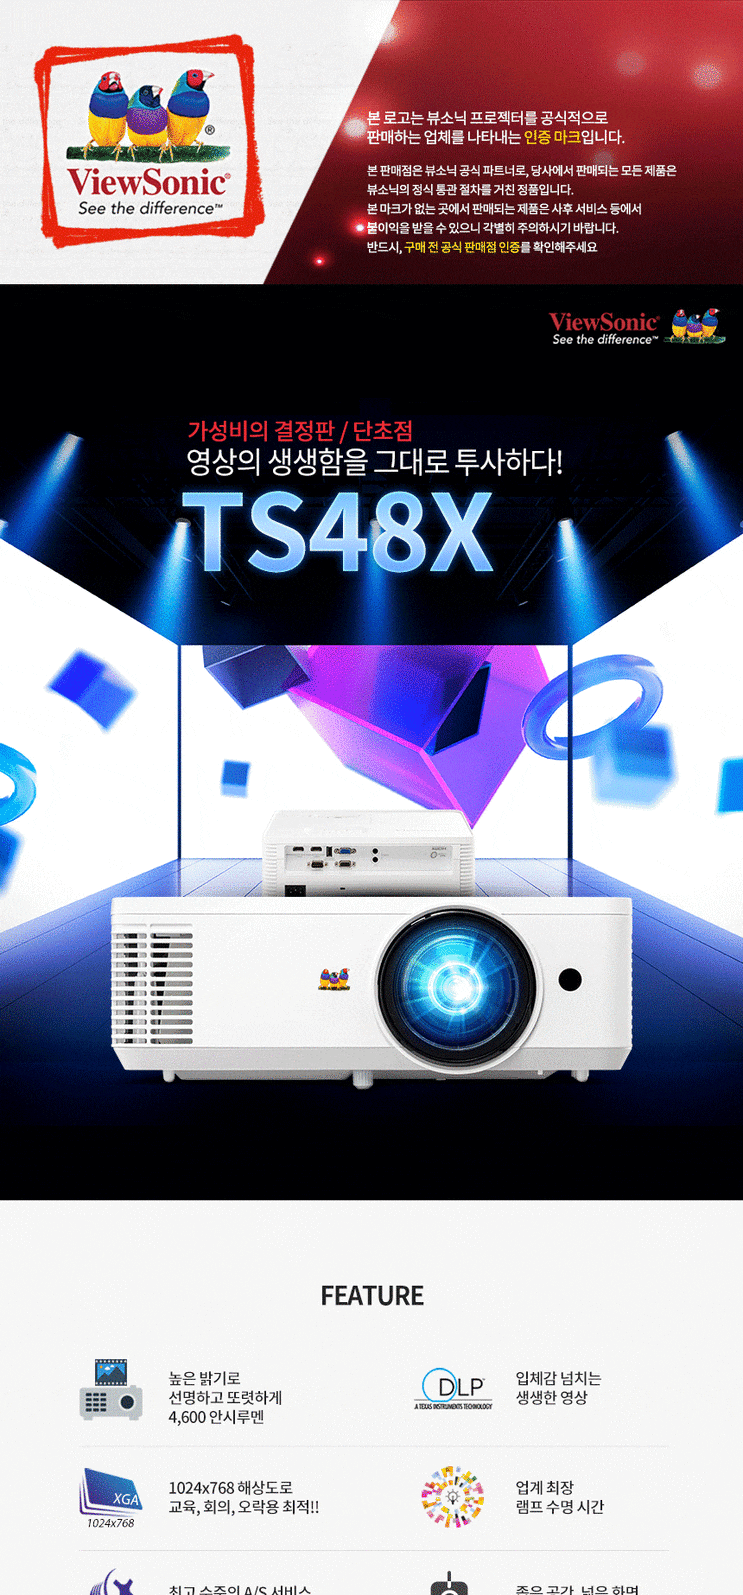 TS48X /뷰소닉 TS48X 빔프로젝터 판매 /설치 전문 /뷰소닉 공식판매점